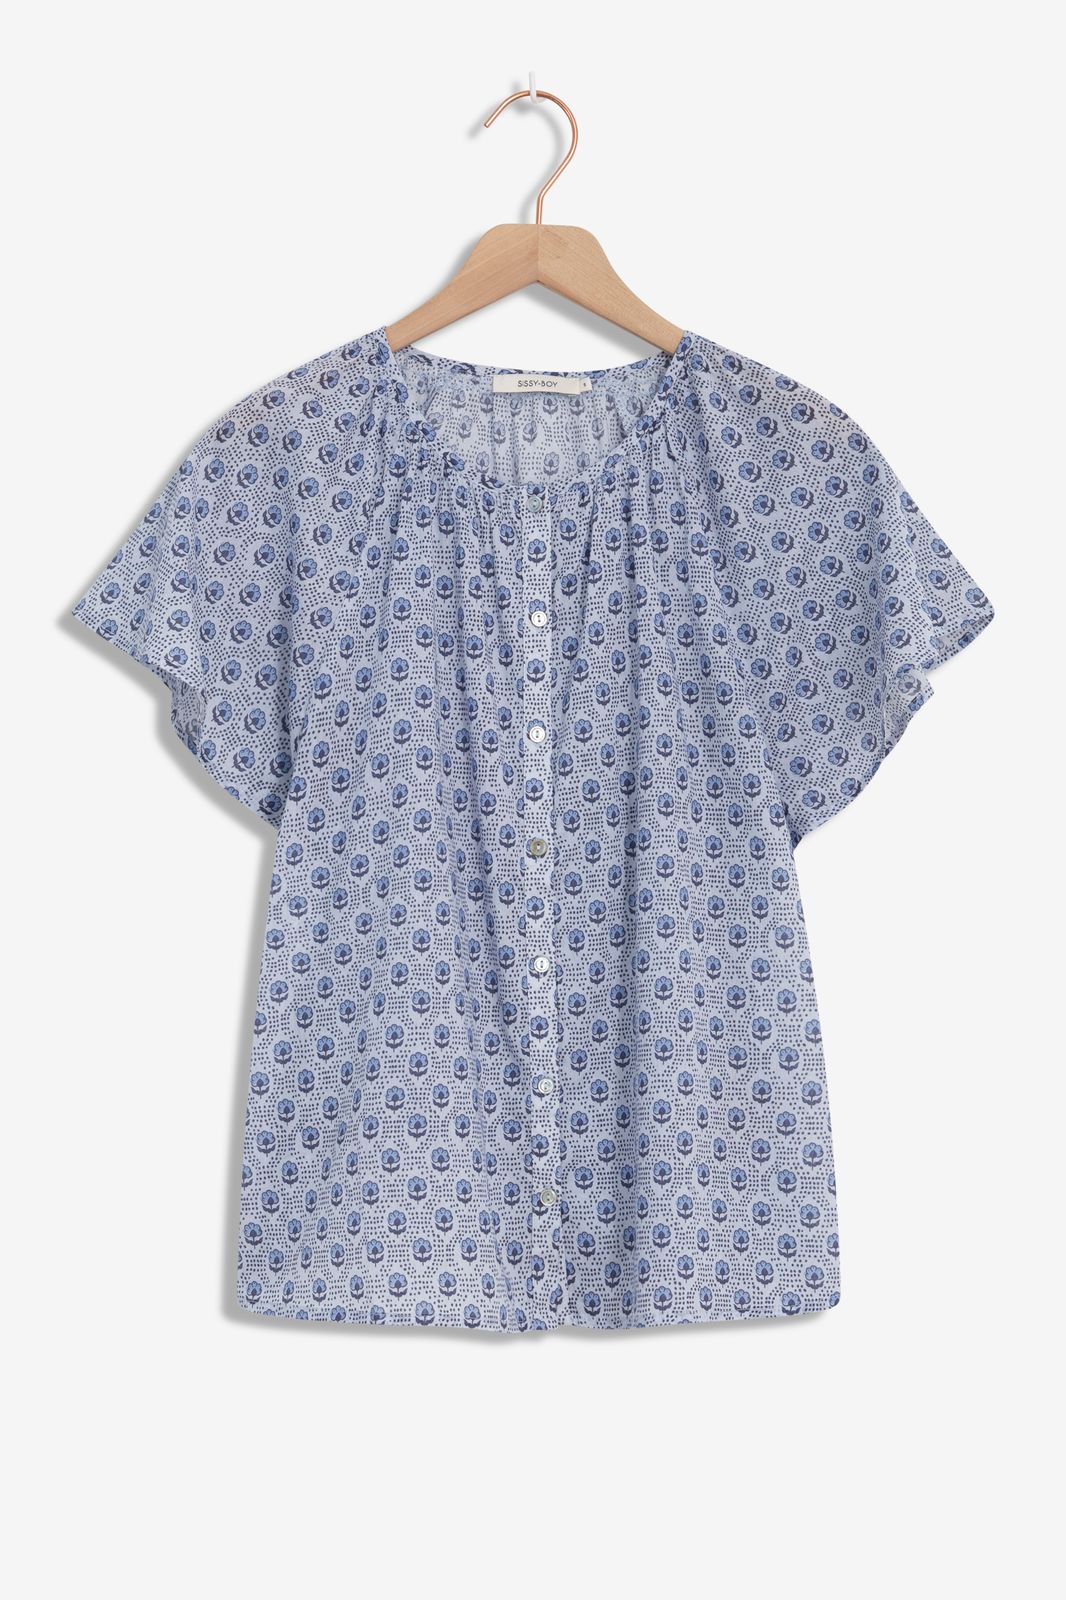 Blauwe blouse met minimal flower print